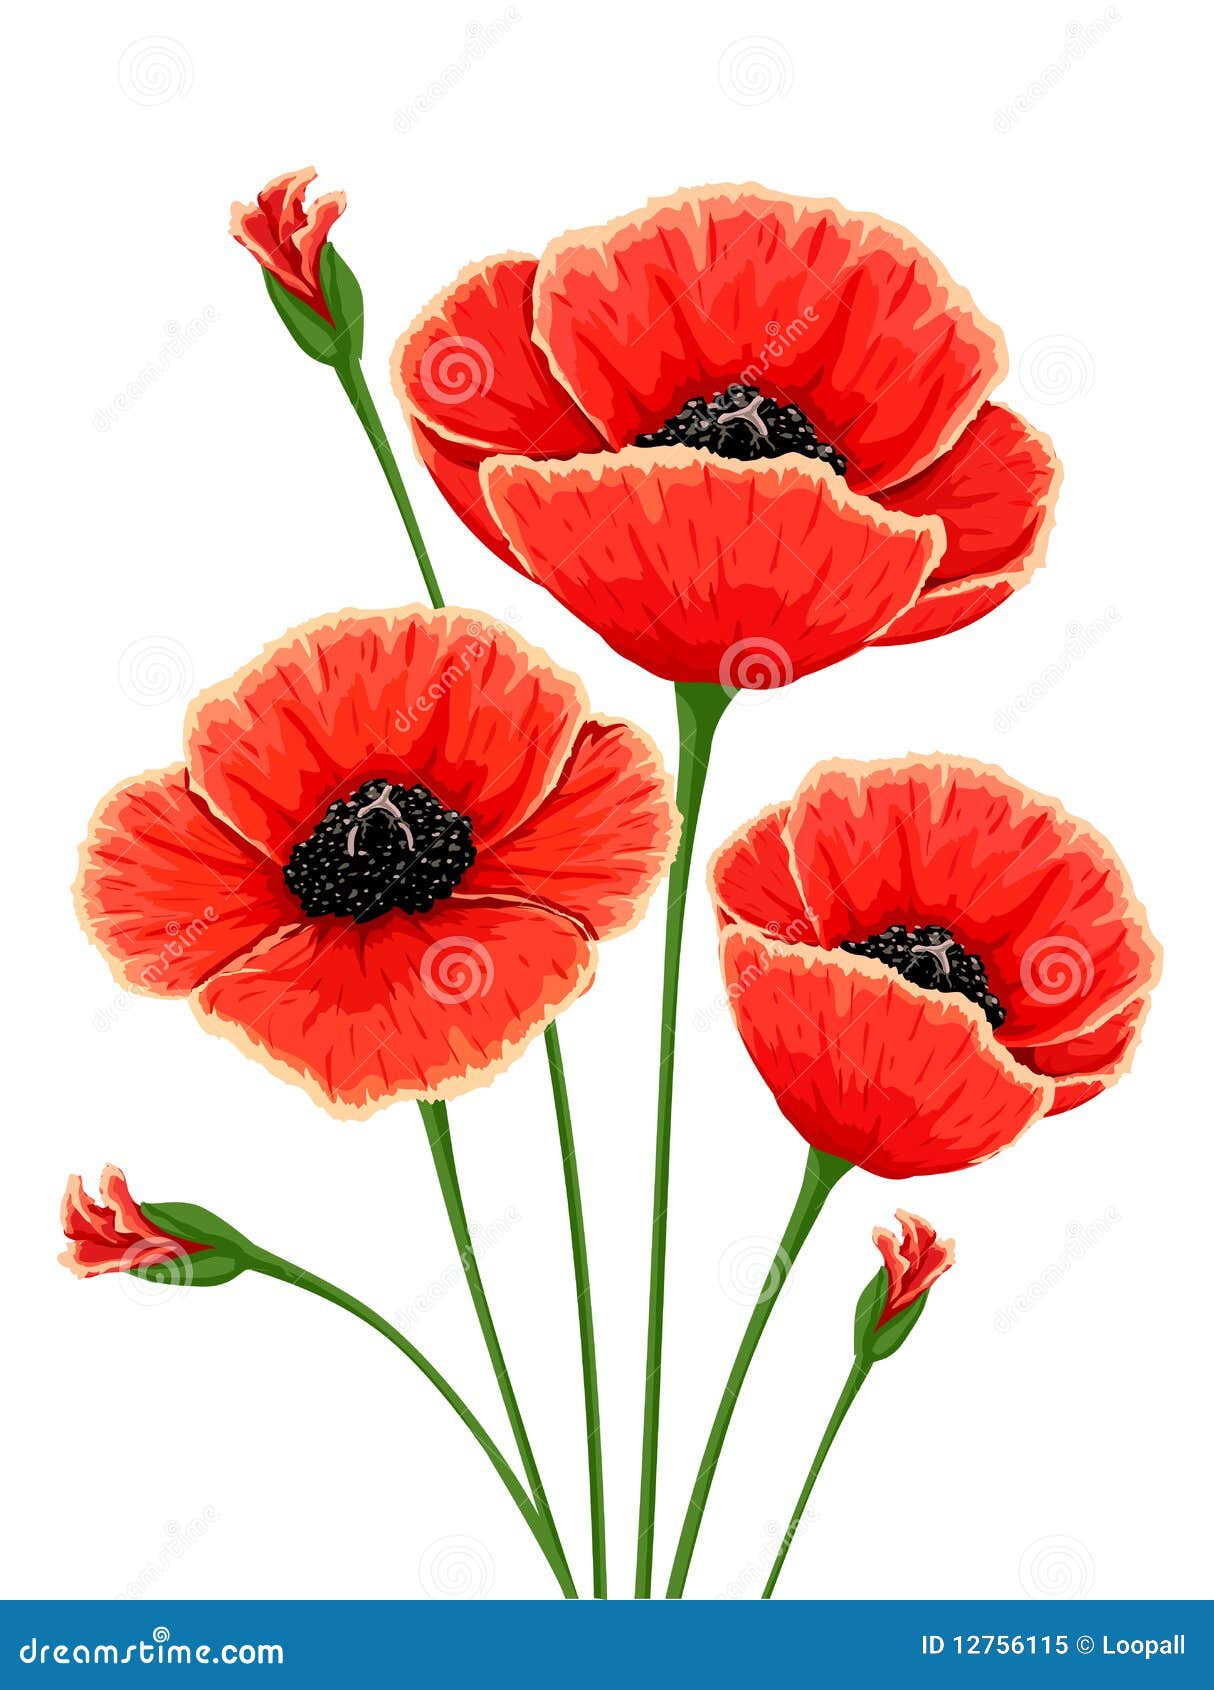 Red poppy flowers stock illustration. Illustration of white - 12756115